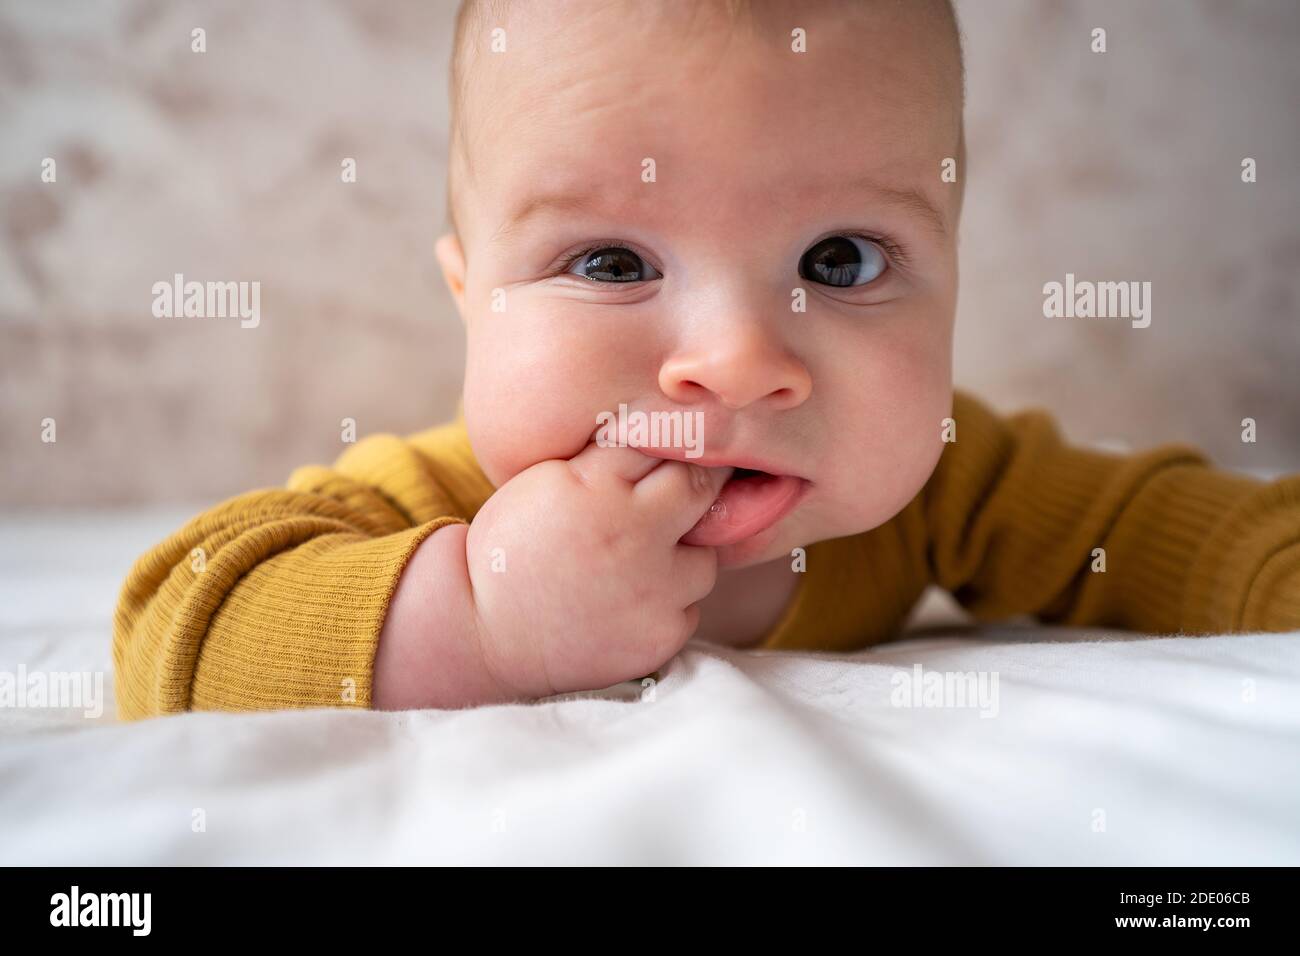 Piccolo, grazioso funny baby infant teething con espressione faccia le mani e le dita in bocca gengive infiammate lenire Foto Stock